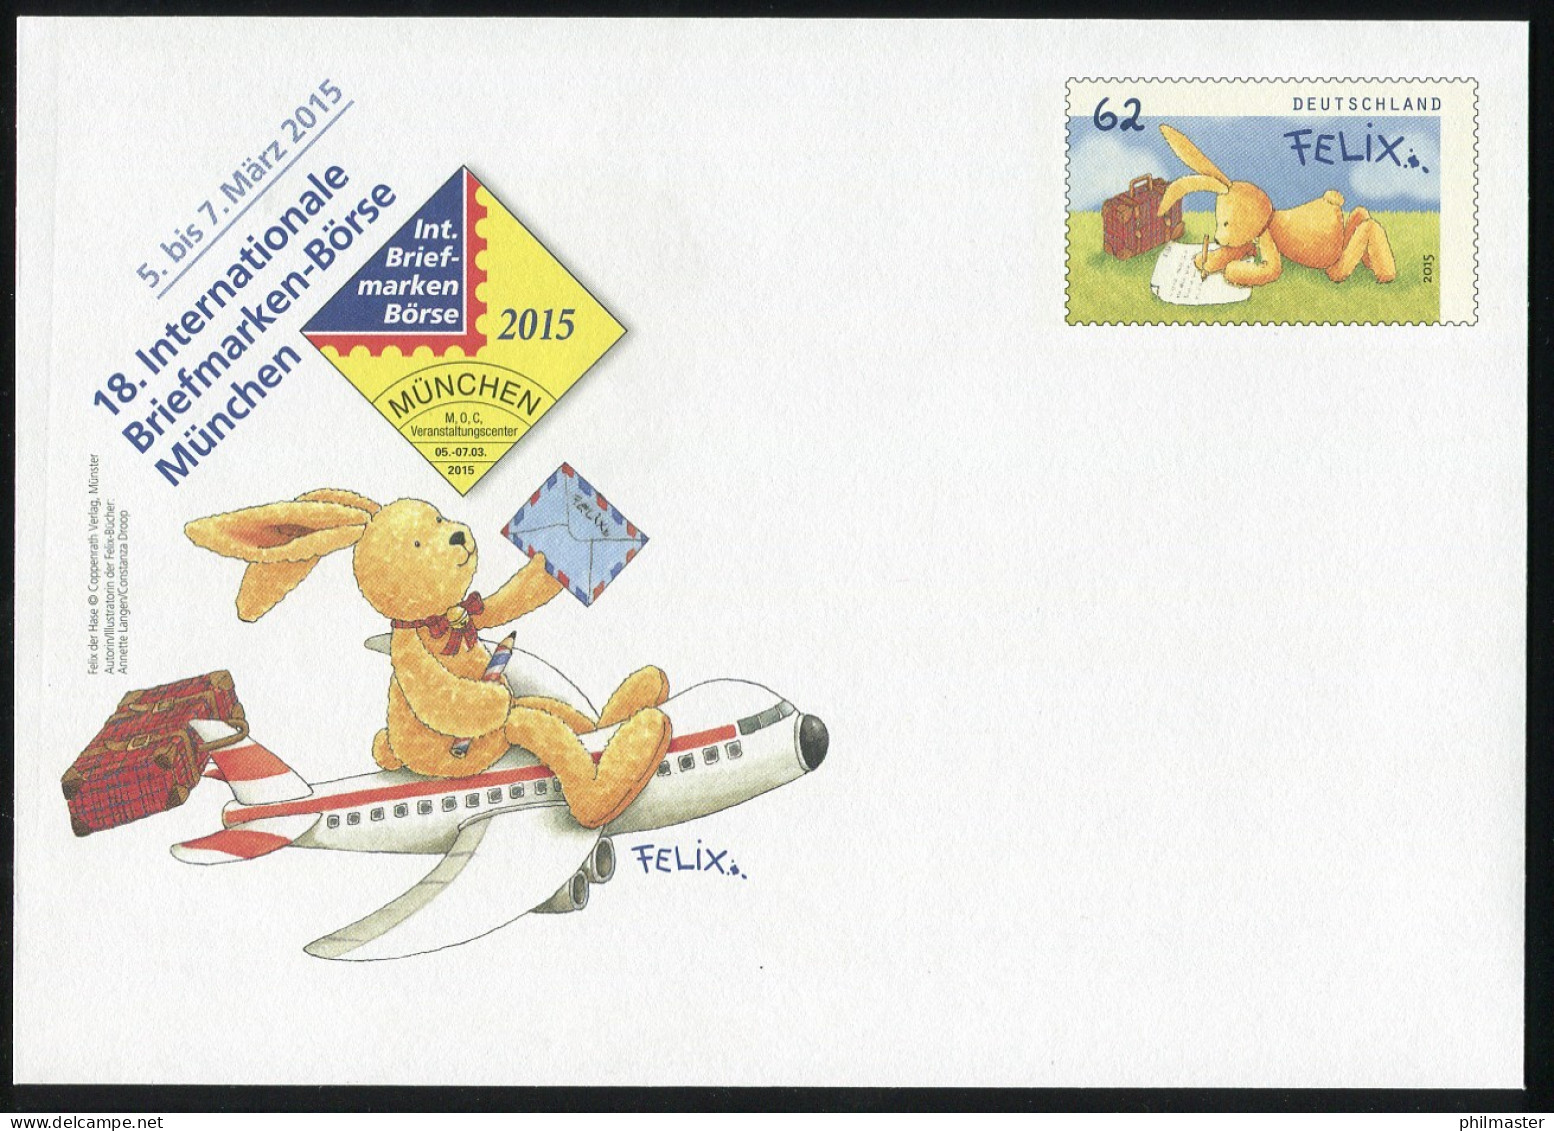 USo 356 Briefmarken-Messe München - Felix Der Hase 2015, ** - Briefomslagen - Ongebruikt